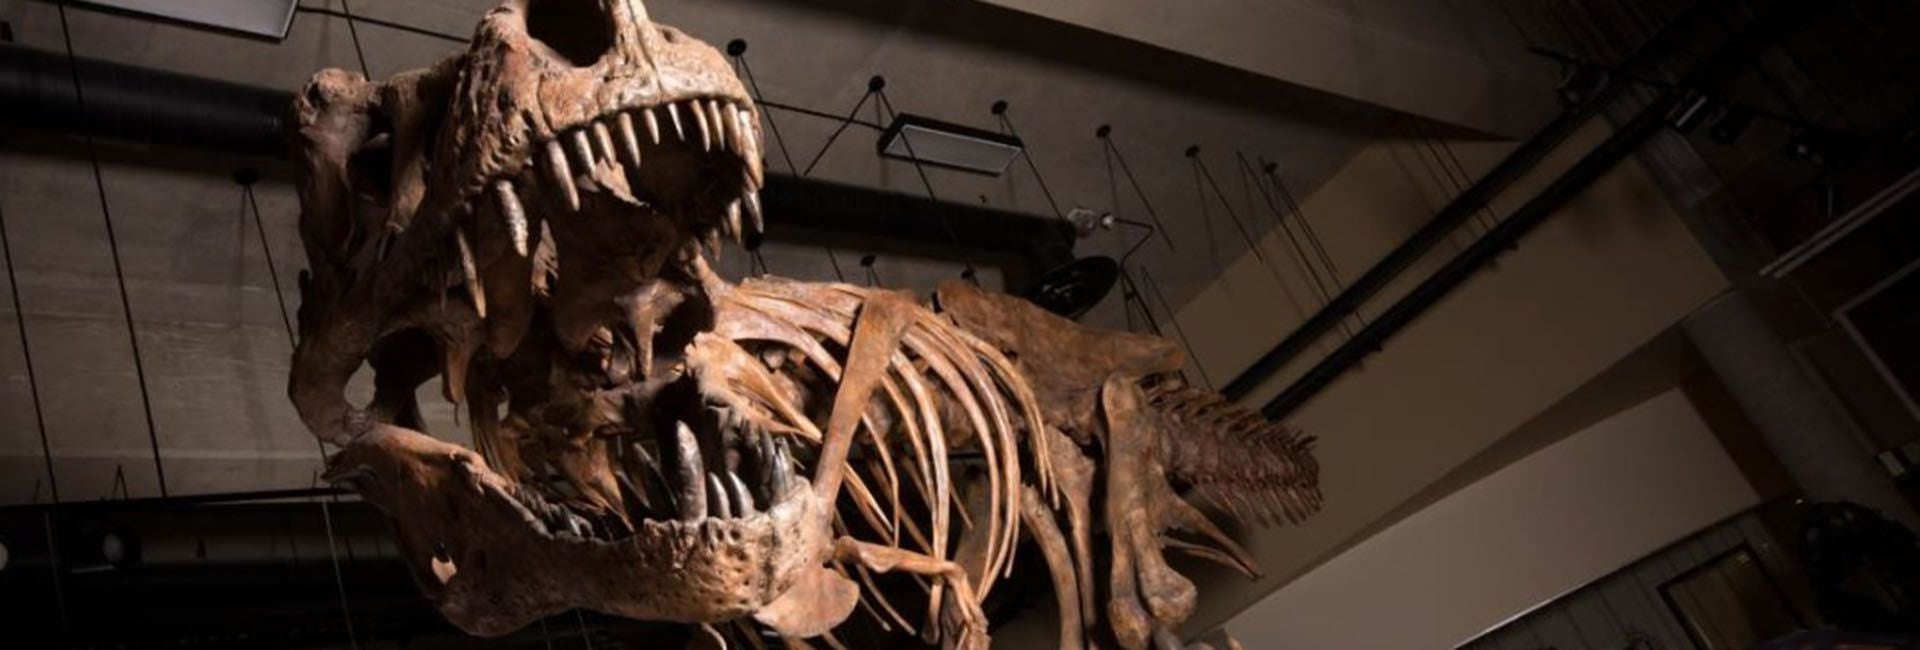 El Tiranosaurio rex es el dinosaurio más conocido del mundo